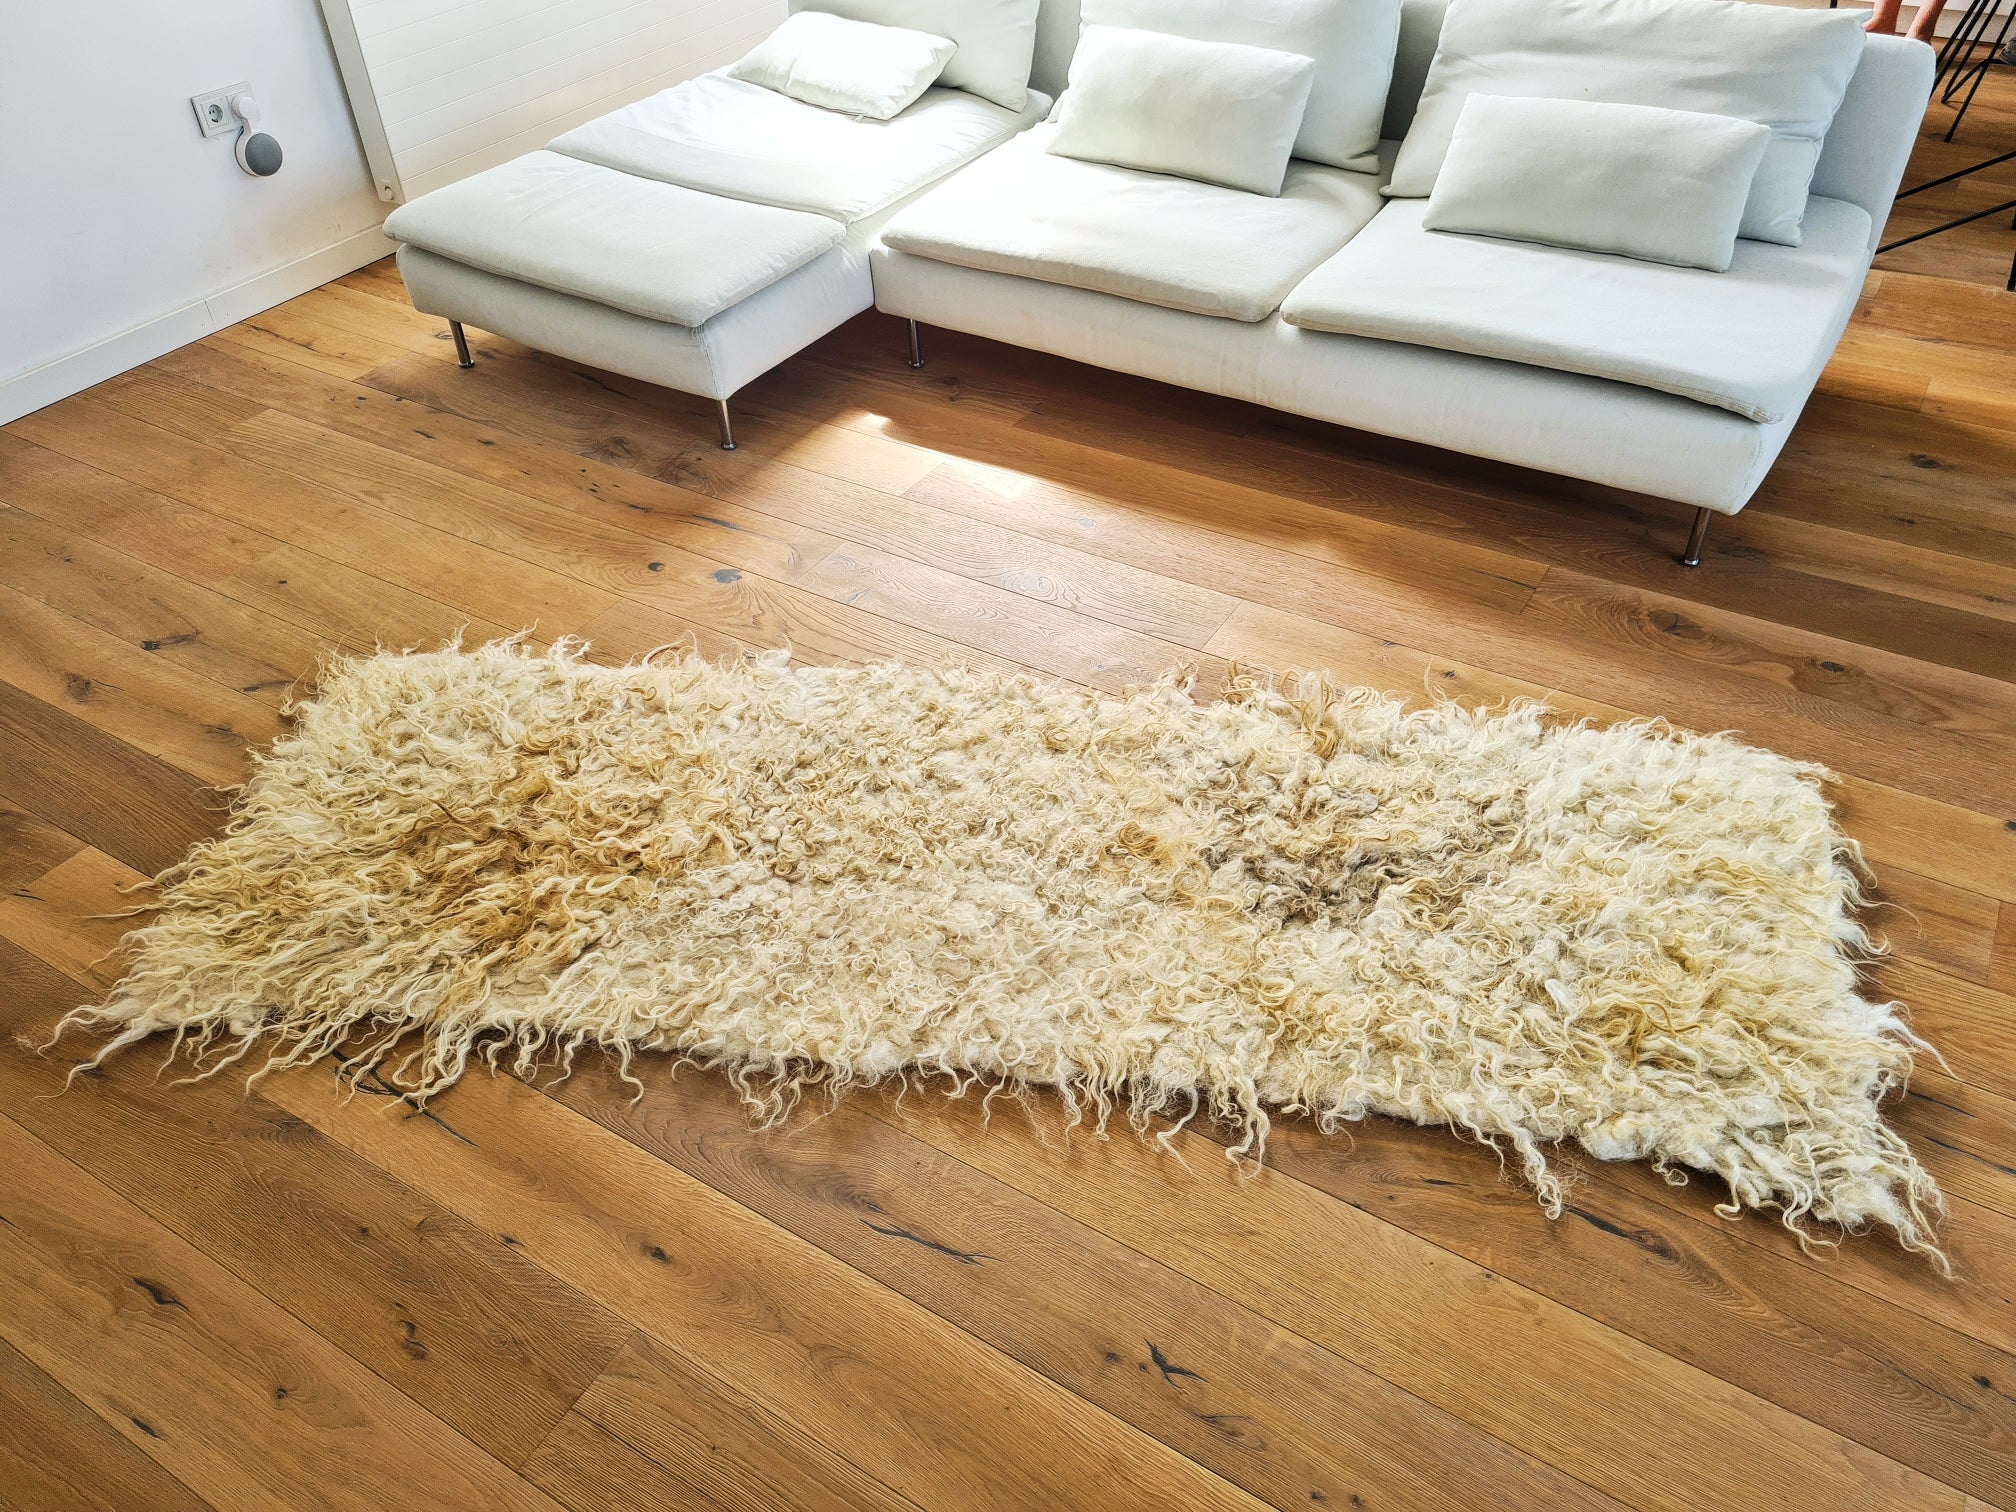 The Walk woolen rug